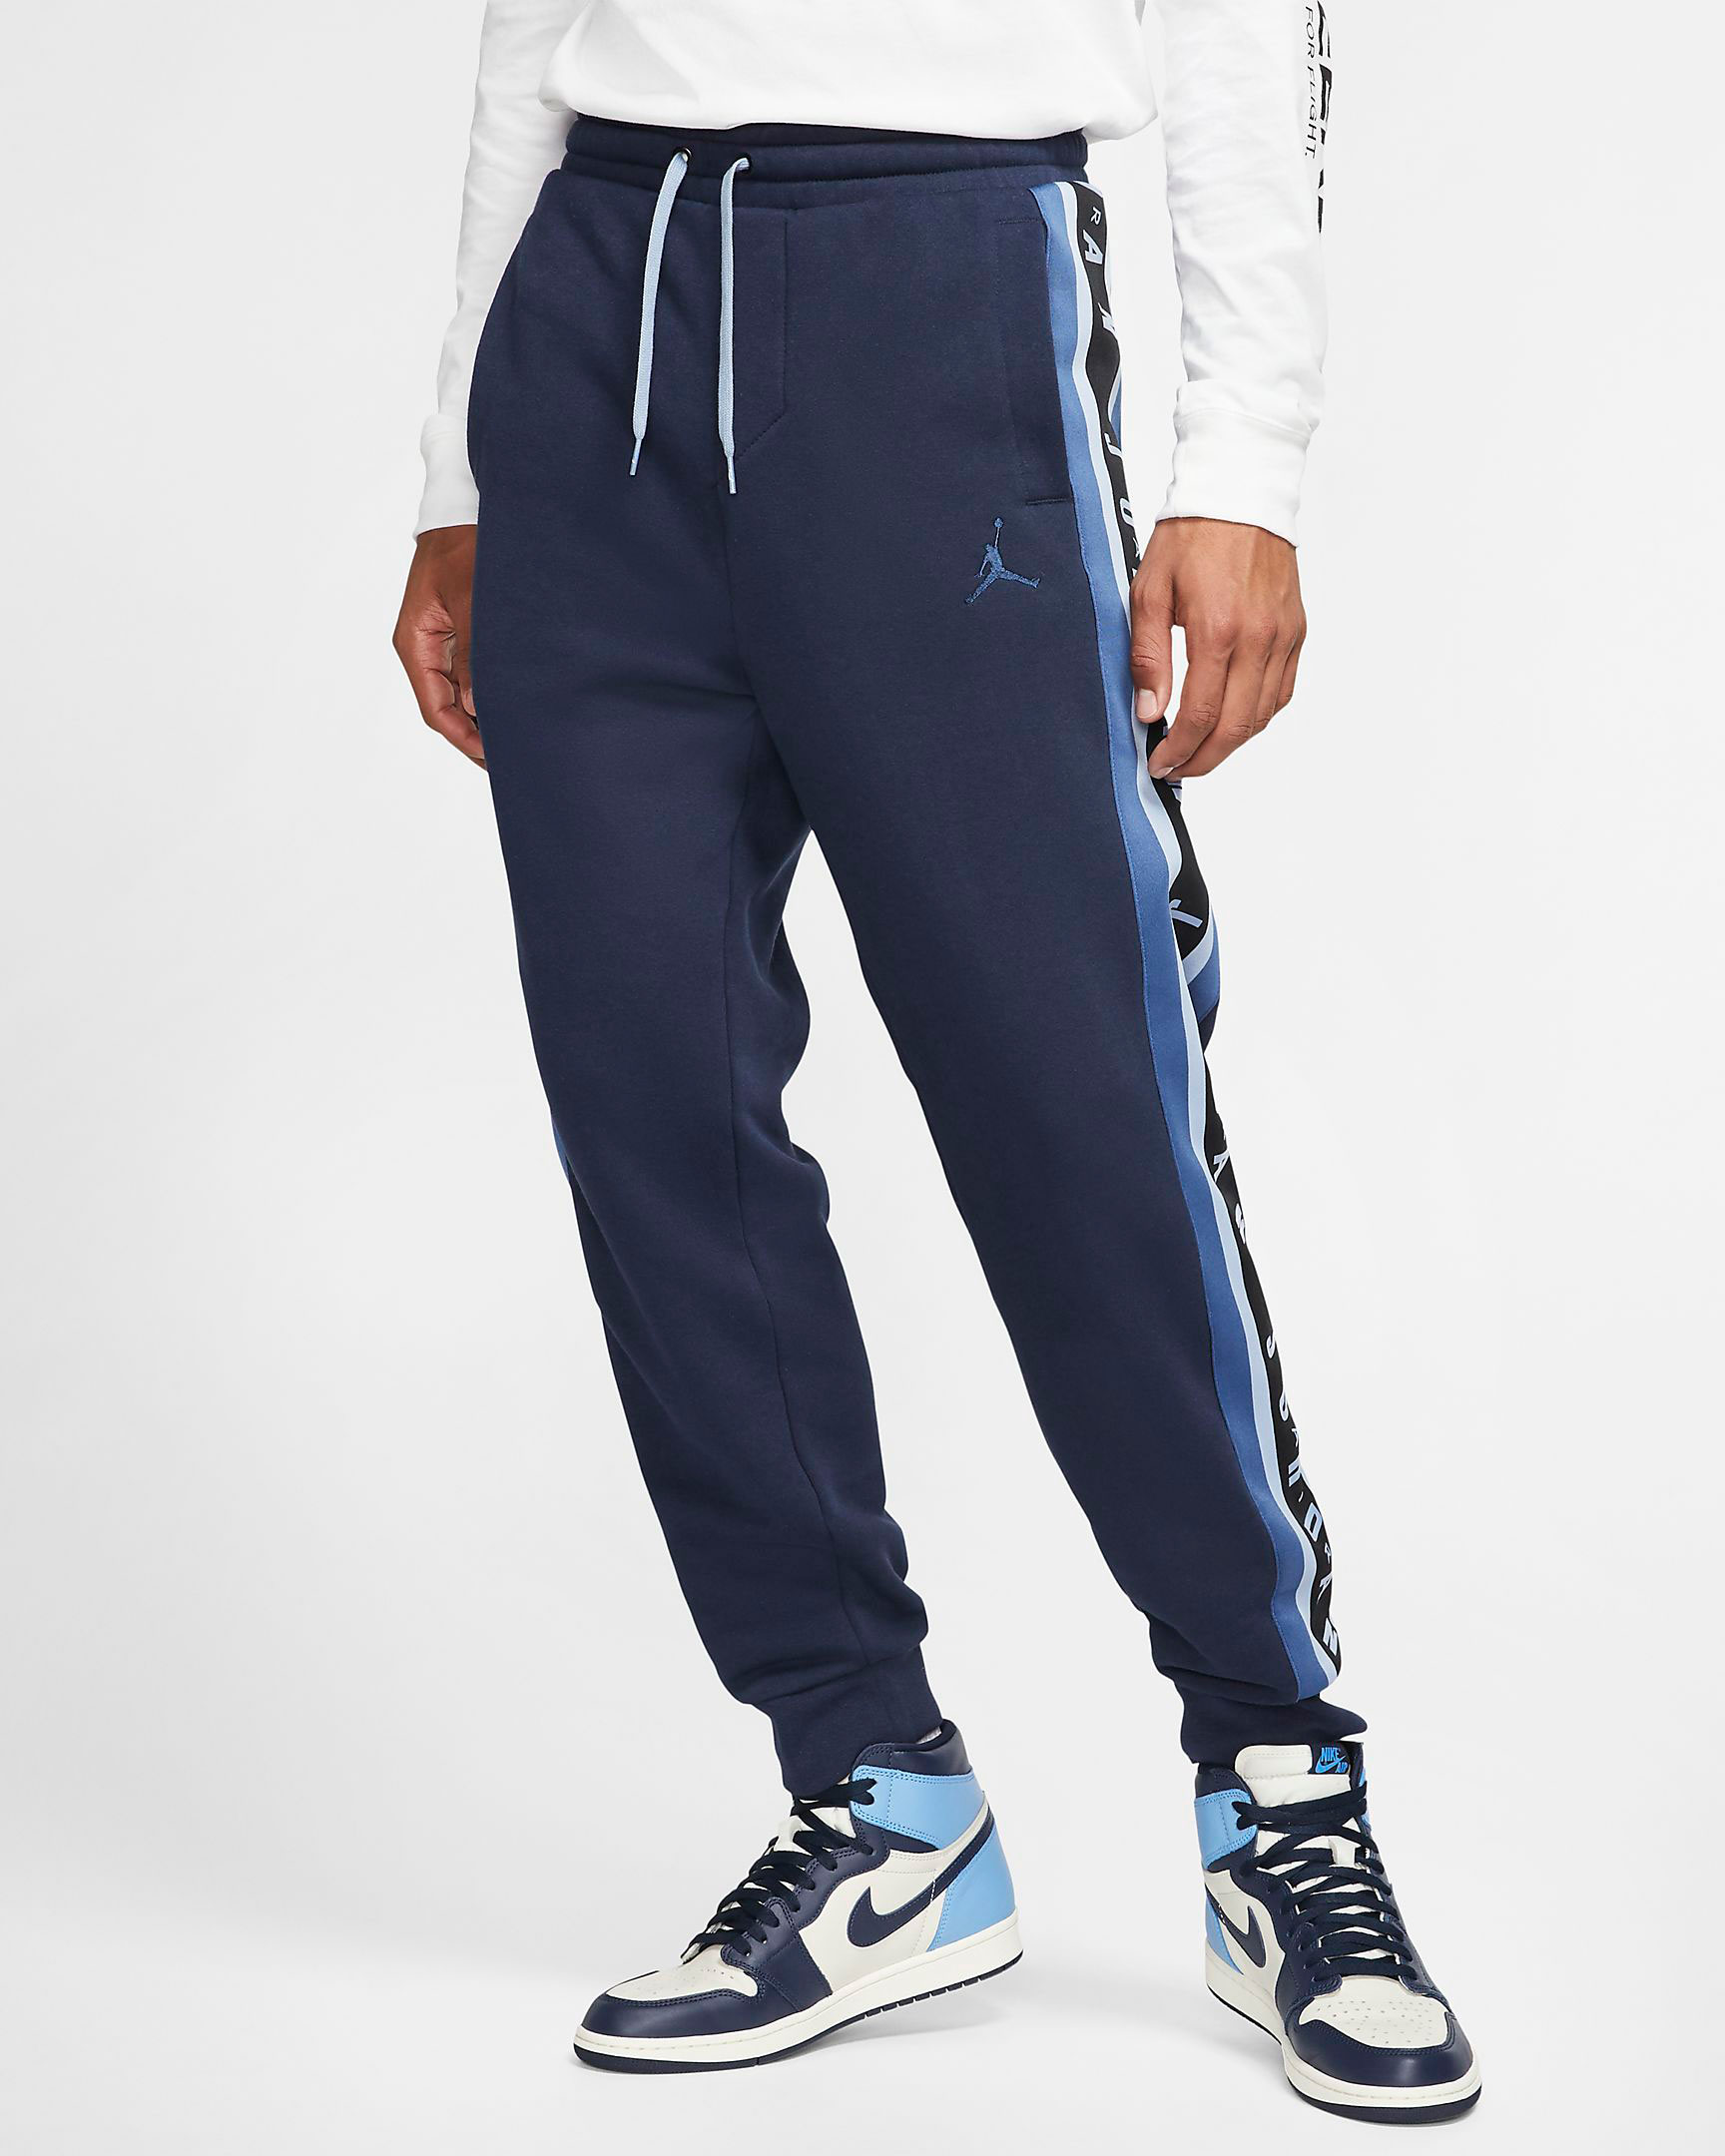 navy blue jordan pants